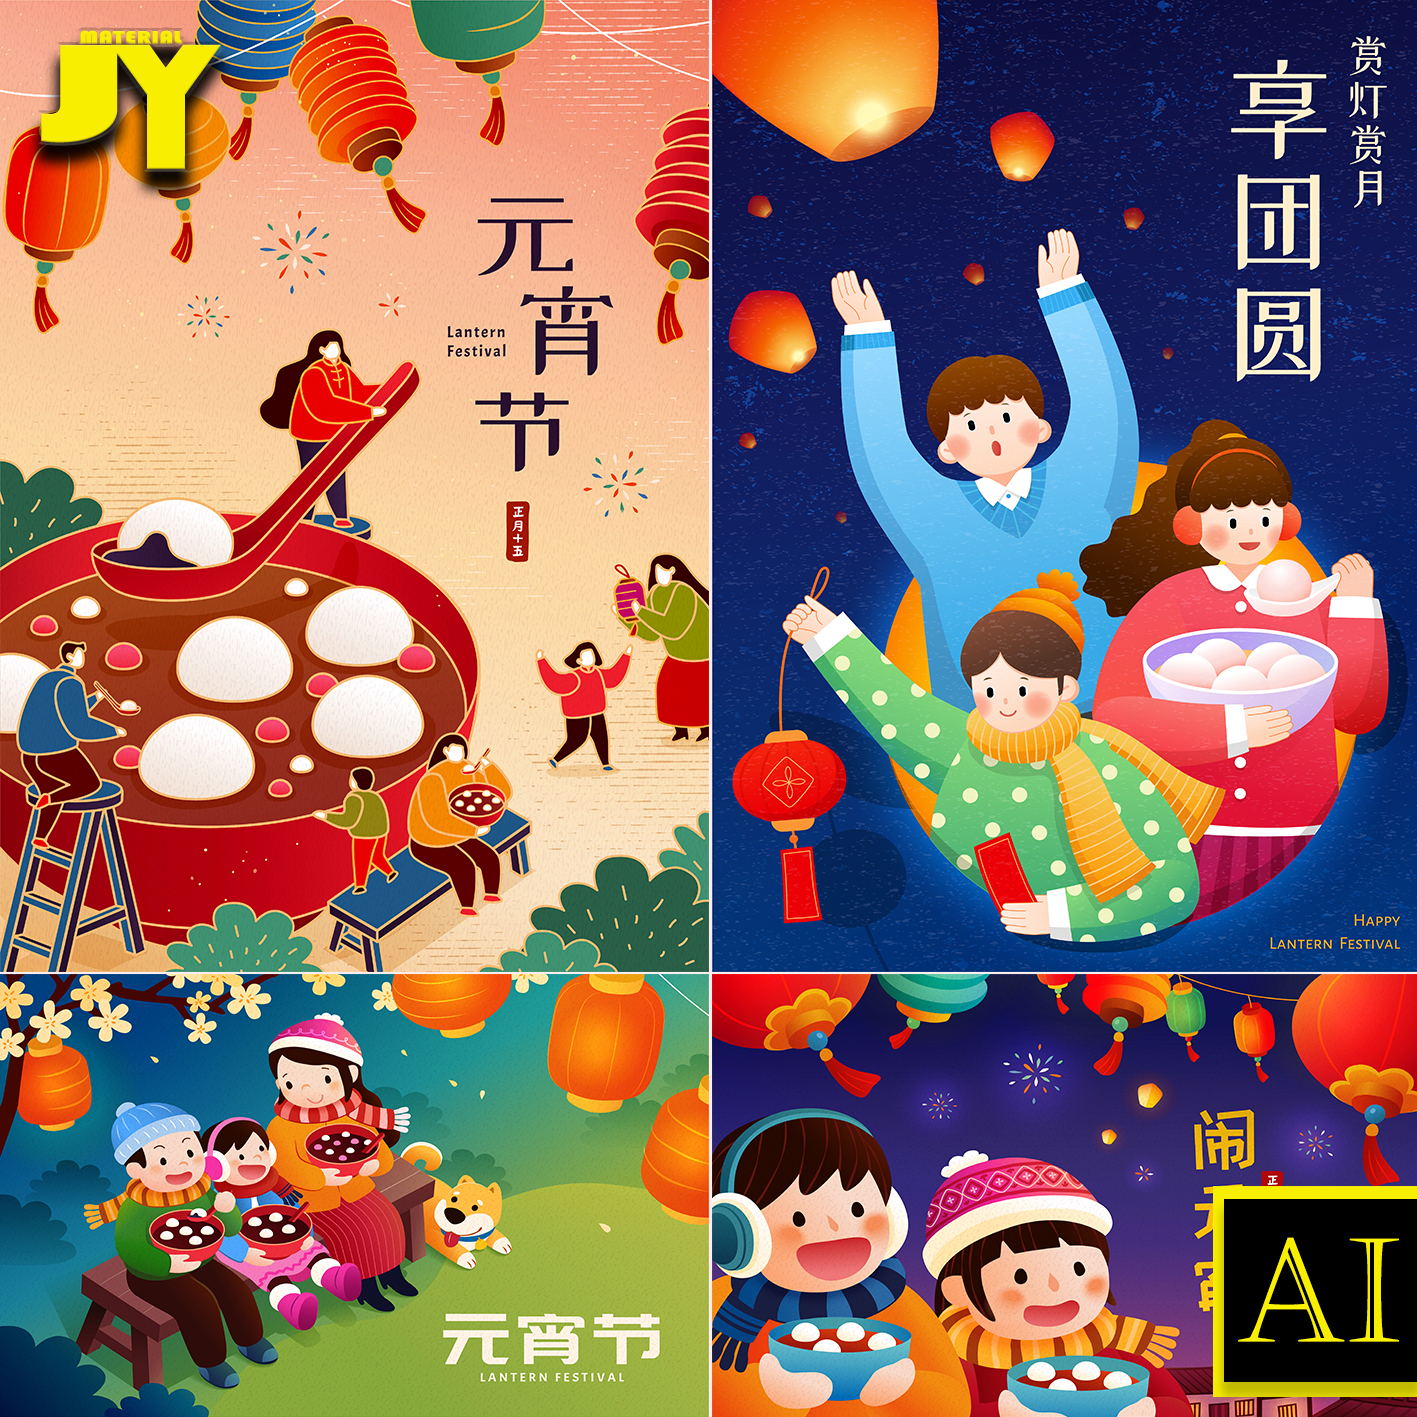 节日端午节促销海报插画手绘粽子粽叶人物西瓜礼品包装设计素材